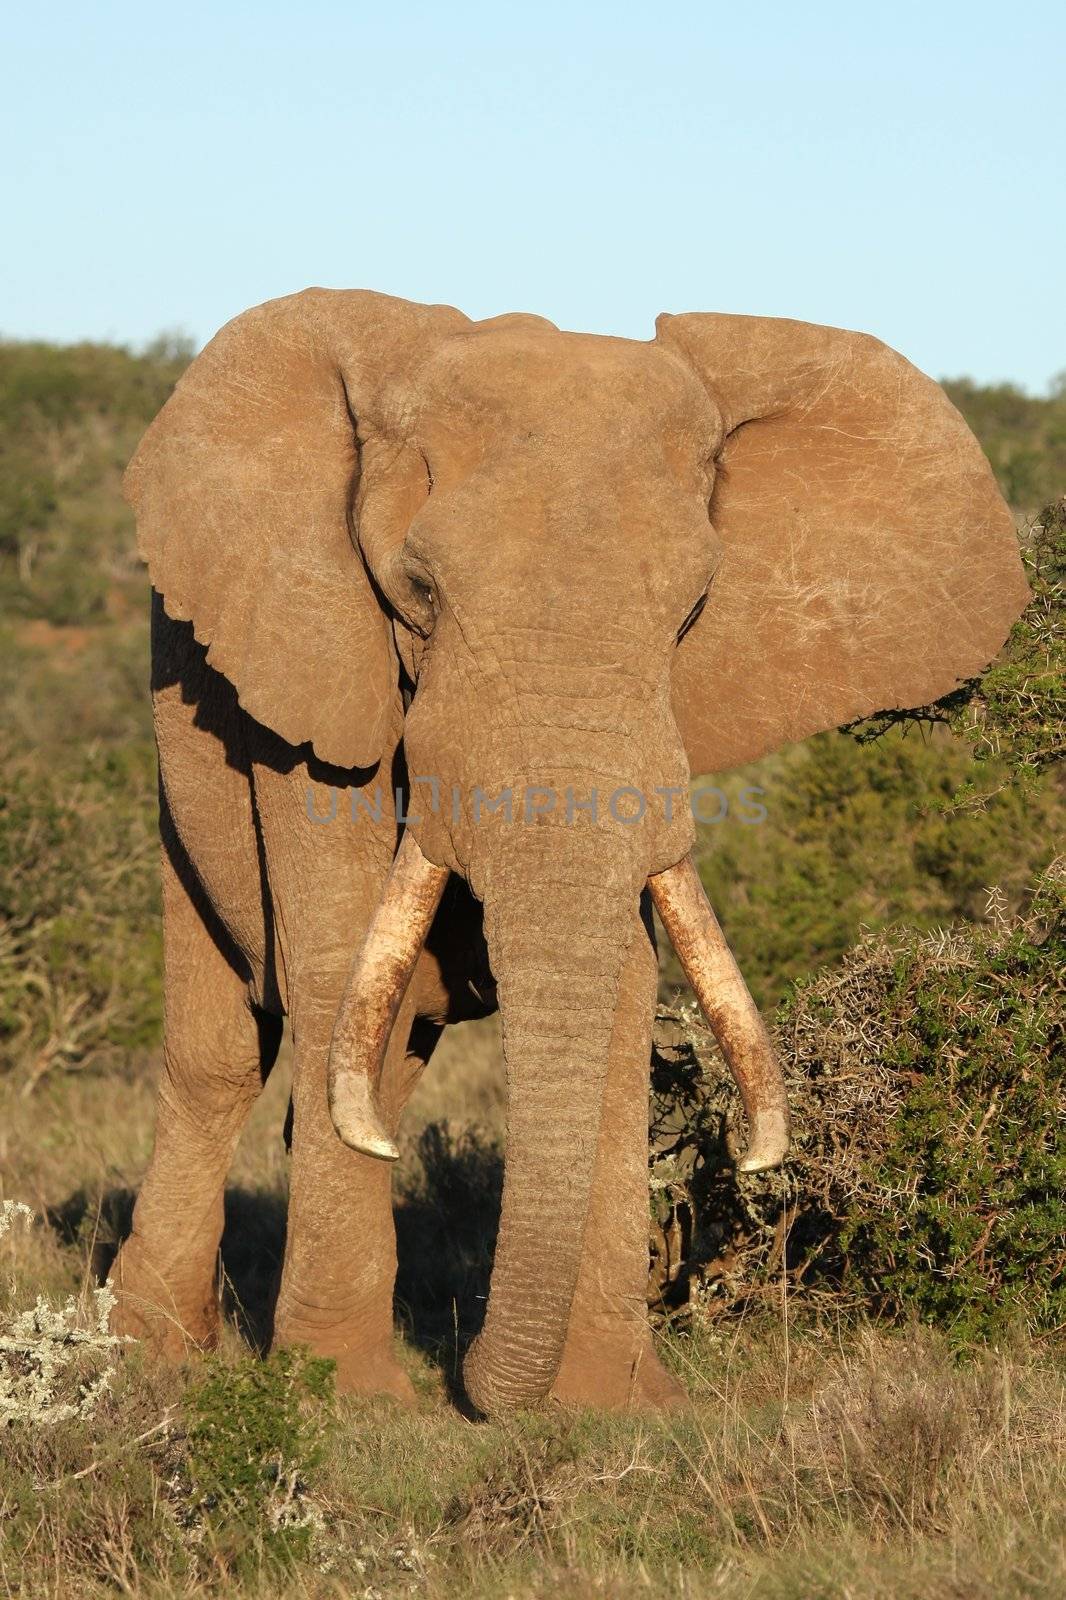 African Elephant Male by fouroaks